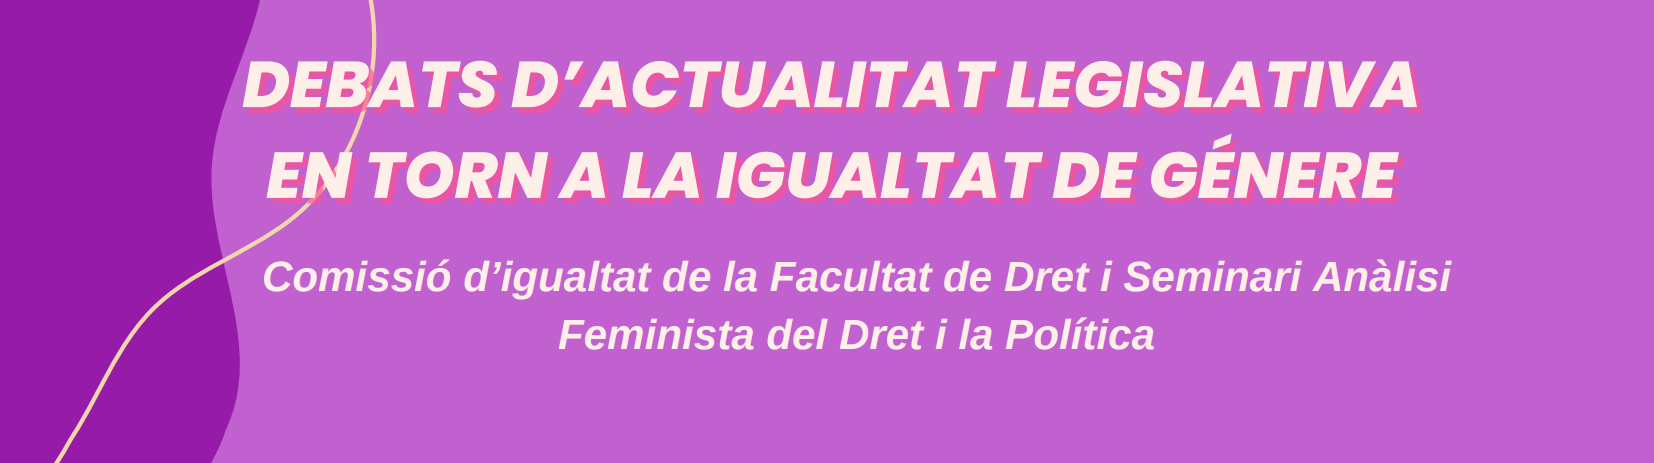 22 de març, 12:00: «Debats d'actualitat legislativa entorn a la igualtat de gènere»